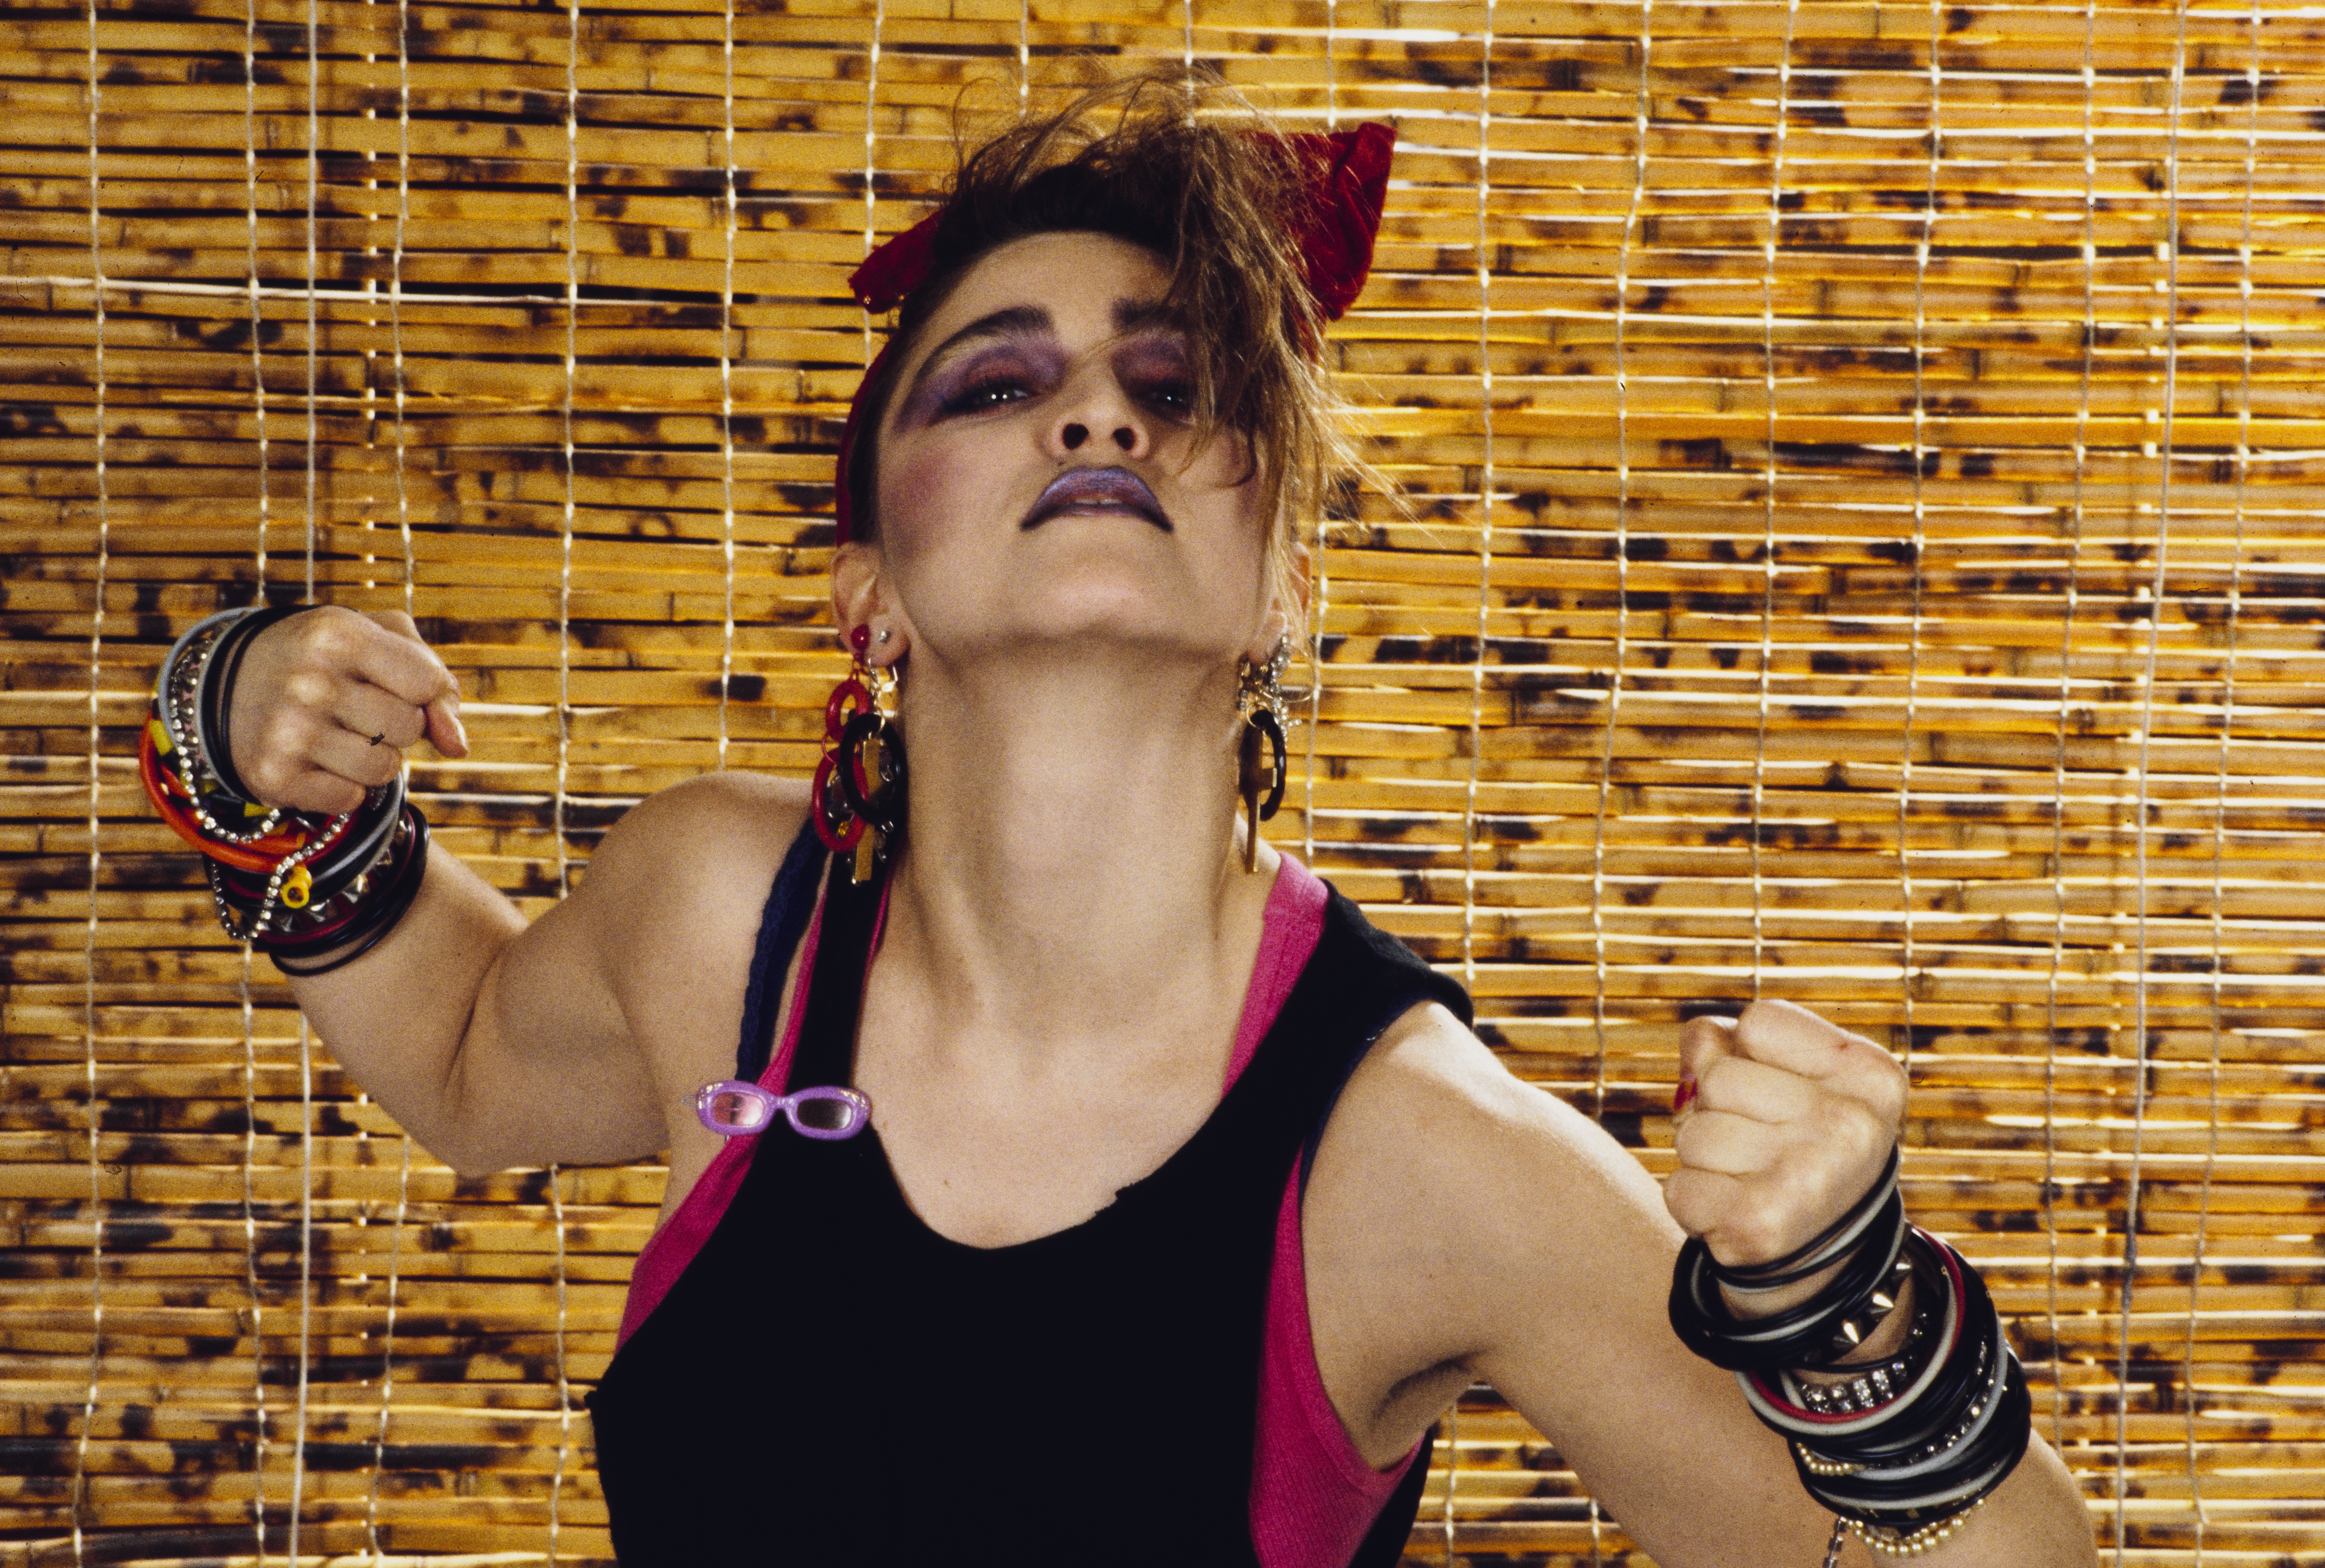 ¿Qué actriz interpretará a Madonna en el biopic que se prepara?